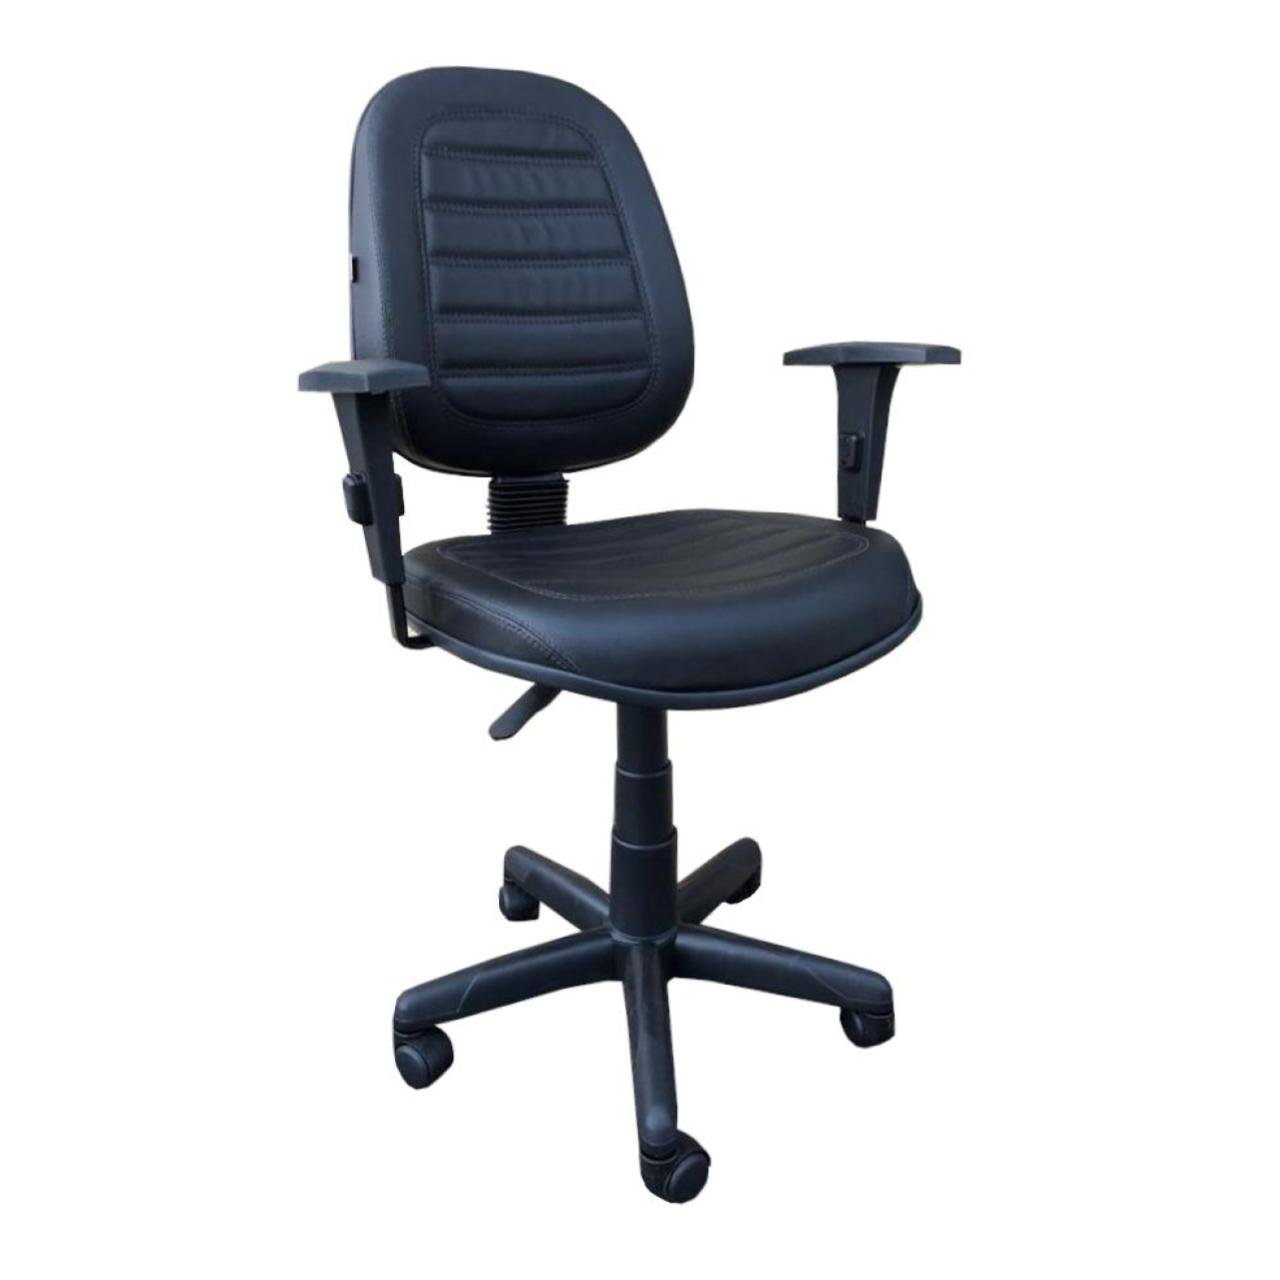 Cadeira Executiva ALTA Costurada Giratória c/ Braços Reguláveis - MARTIFLEX - 32988 - 1